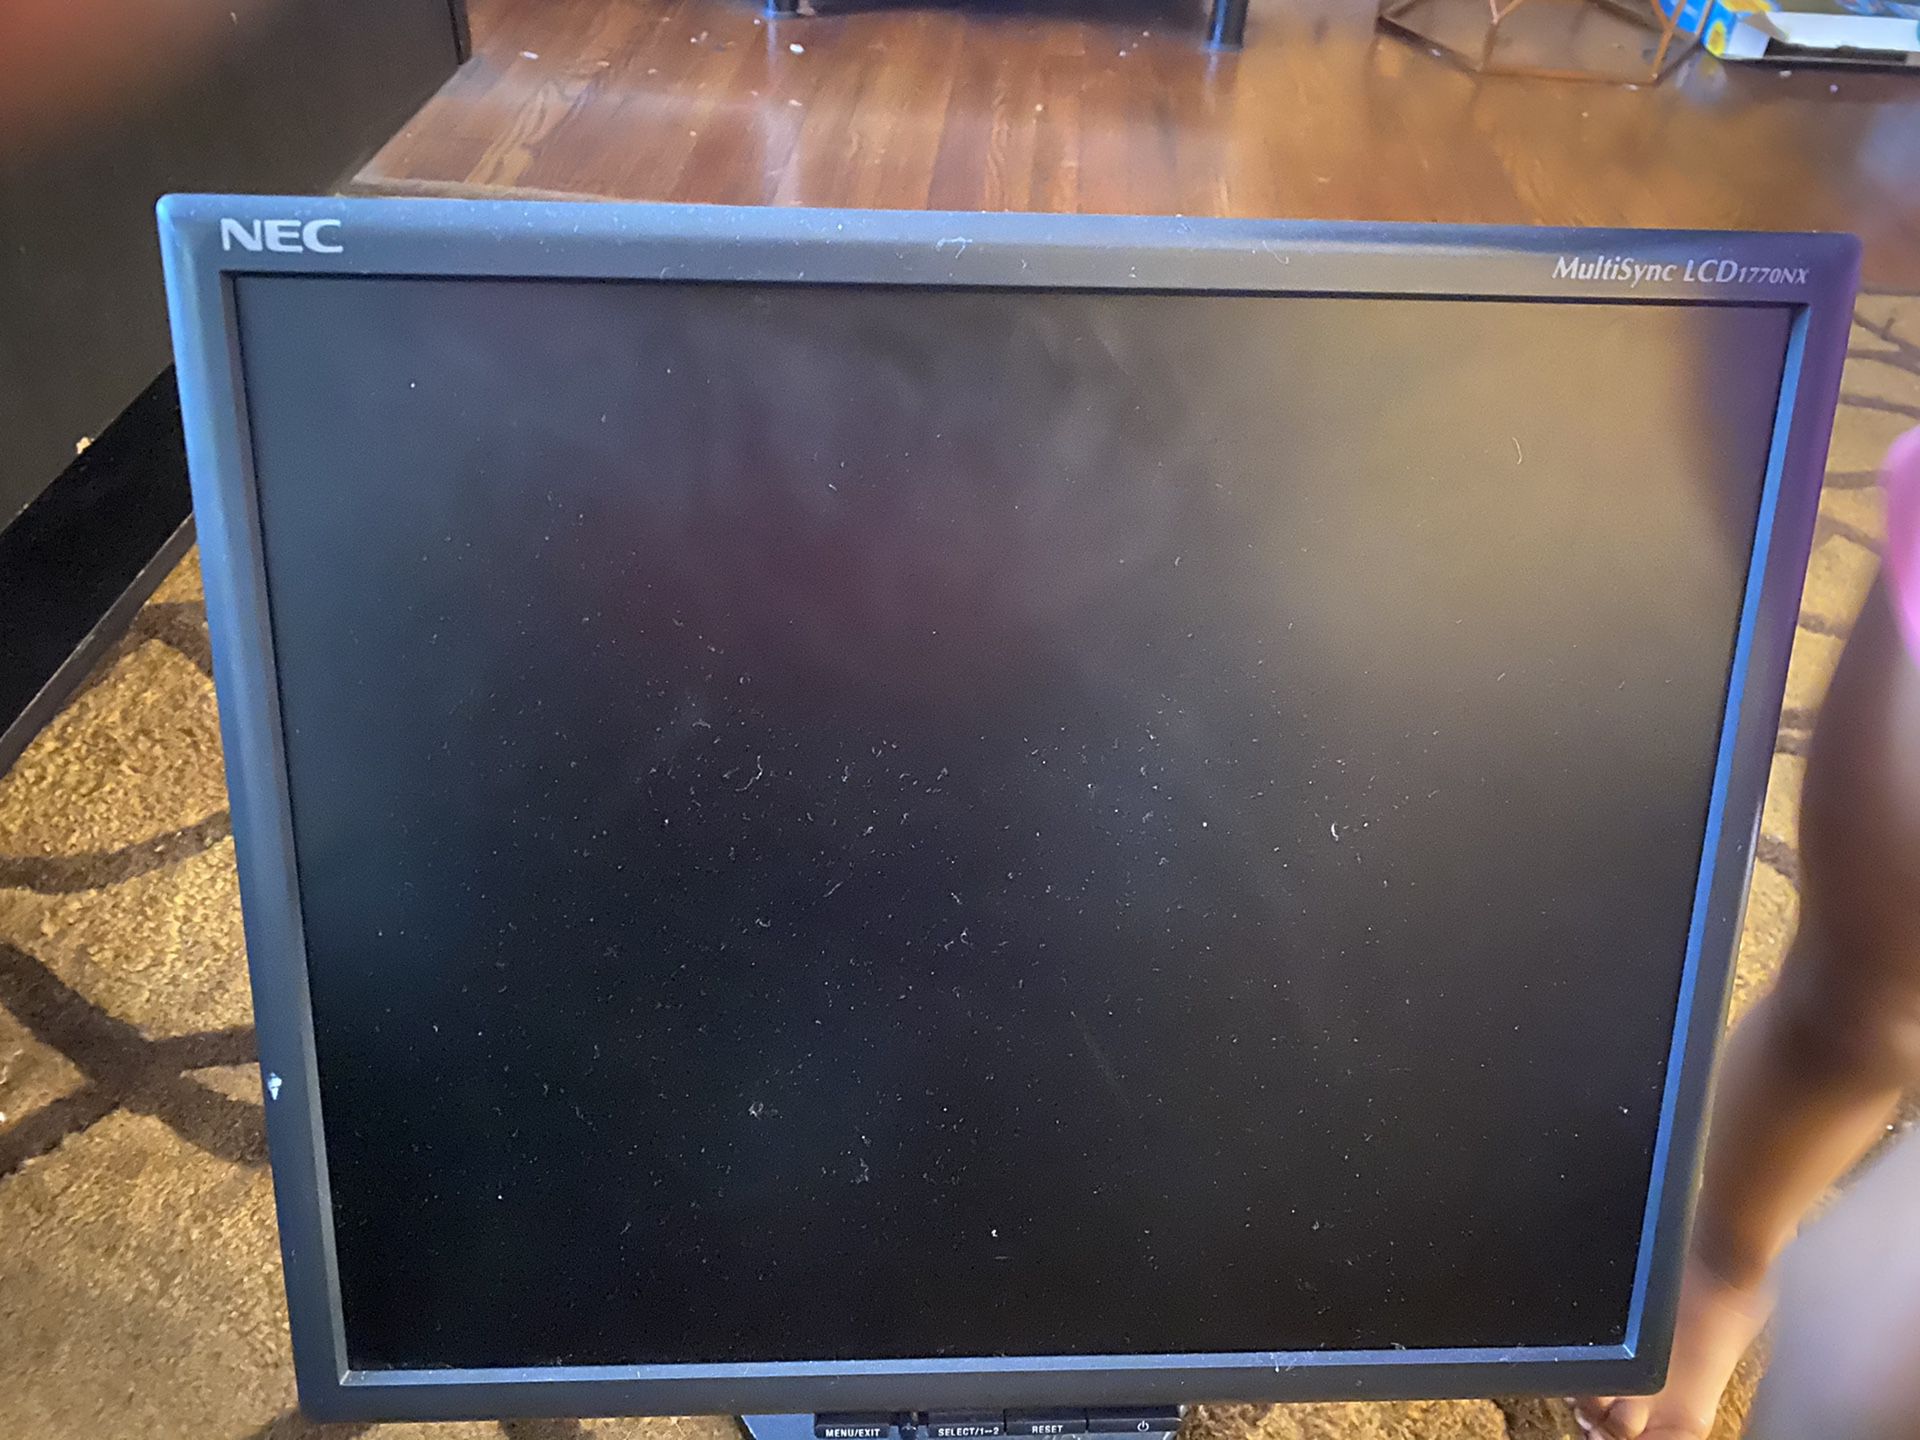 NEC Computer monitor